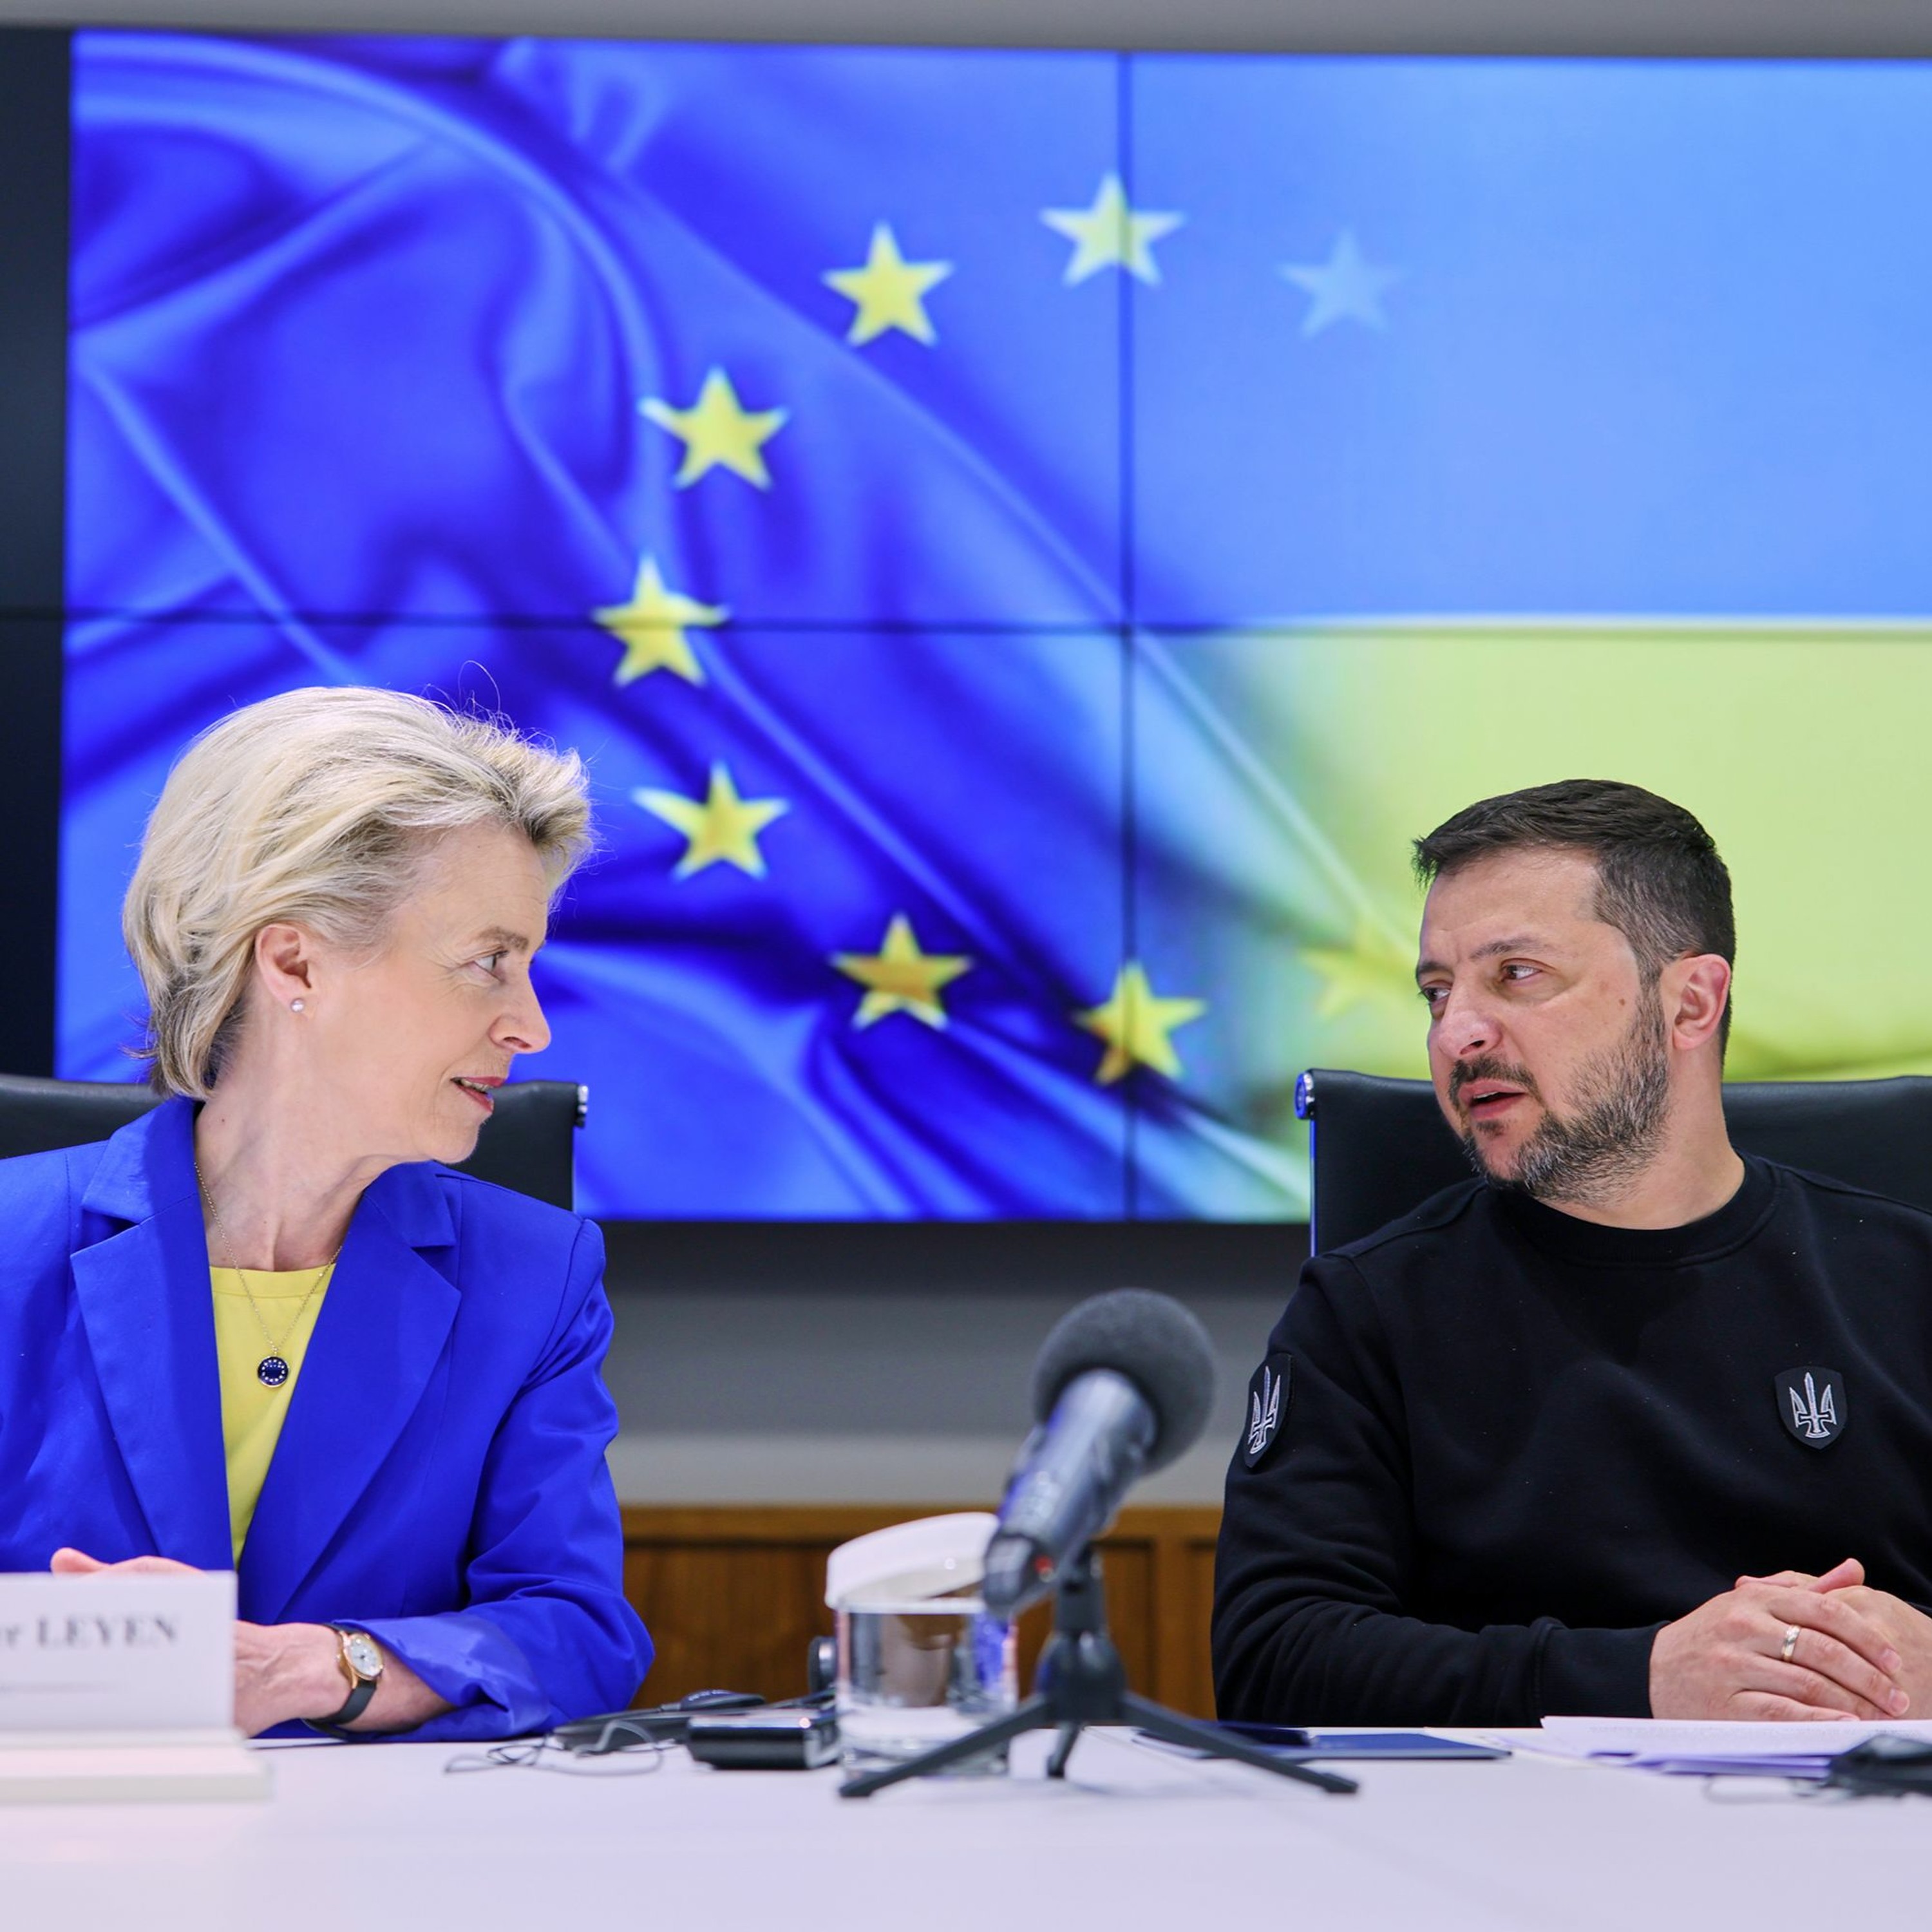 CER Podcast: Ukraine's road to EU membership